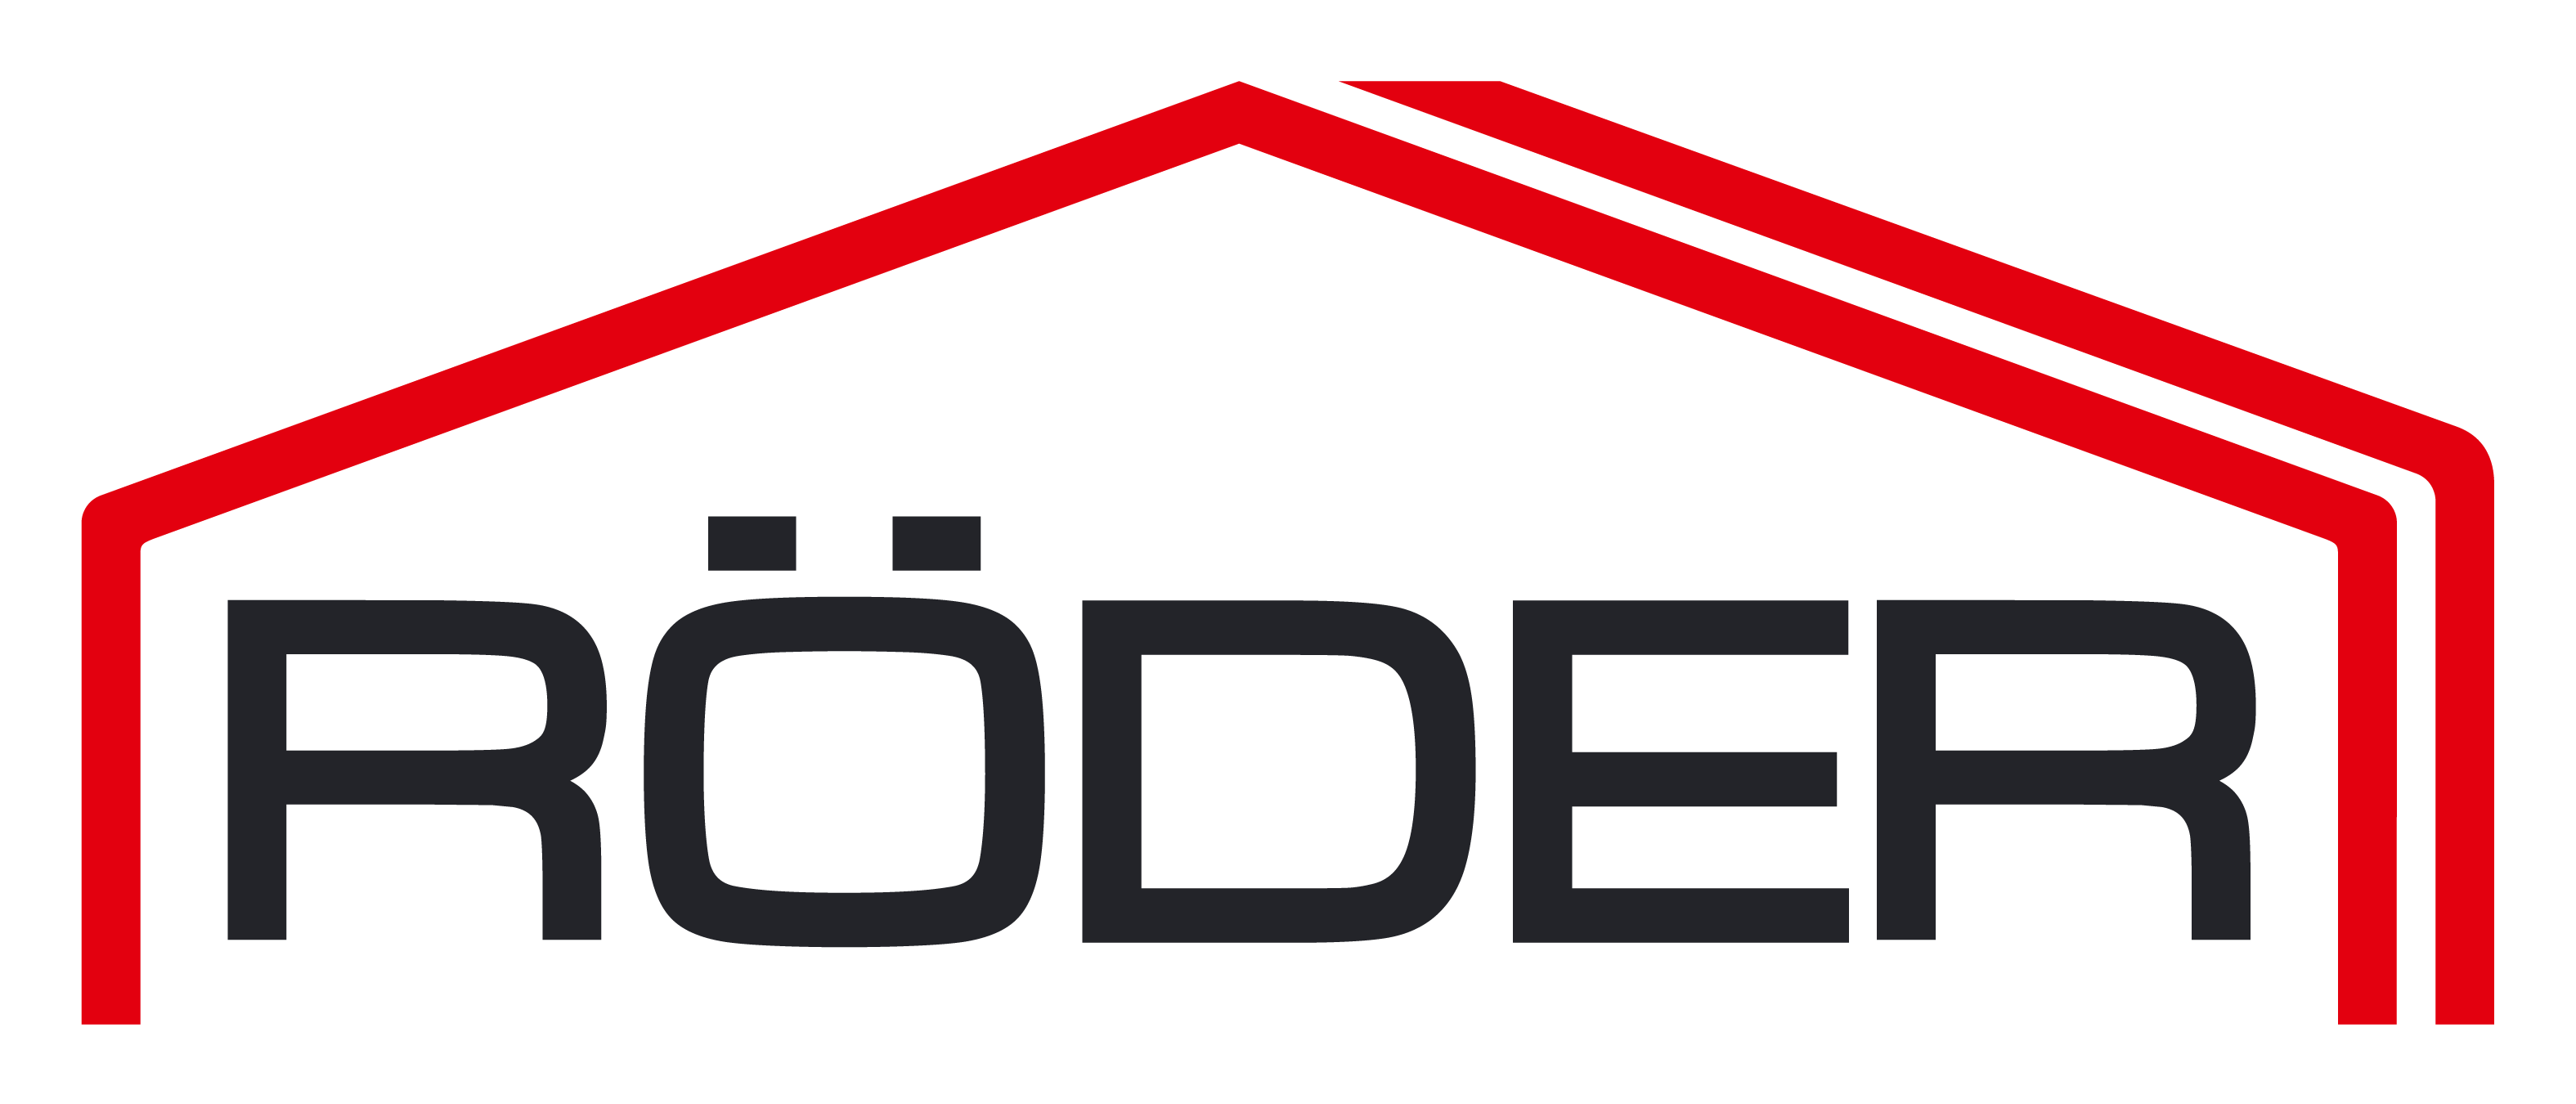 ООО "Родер" logo